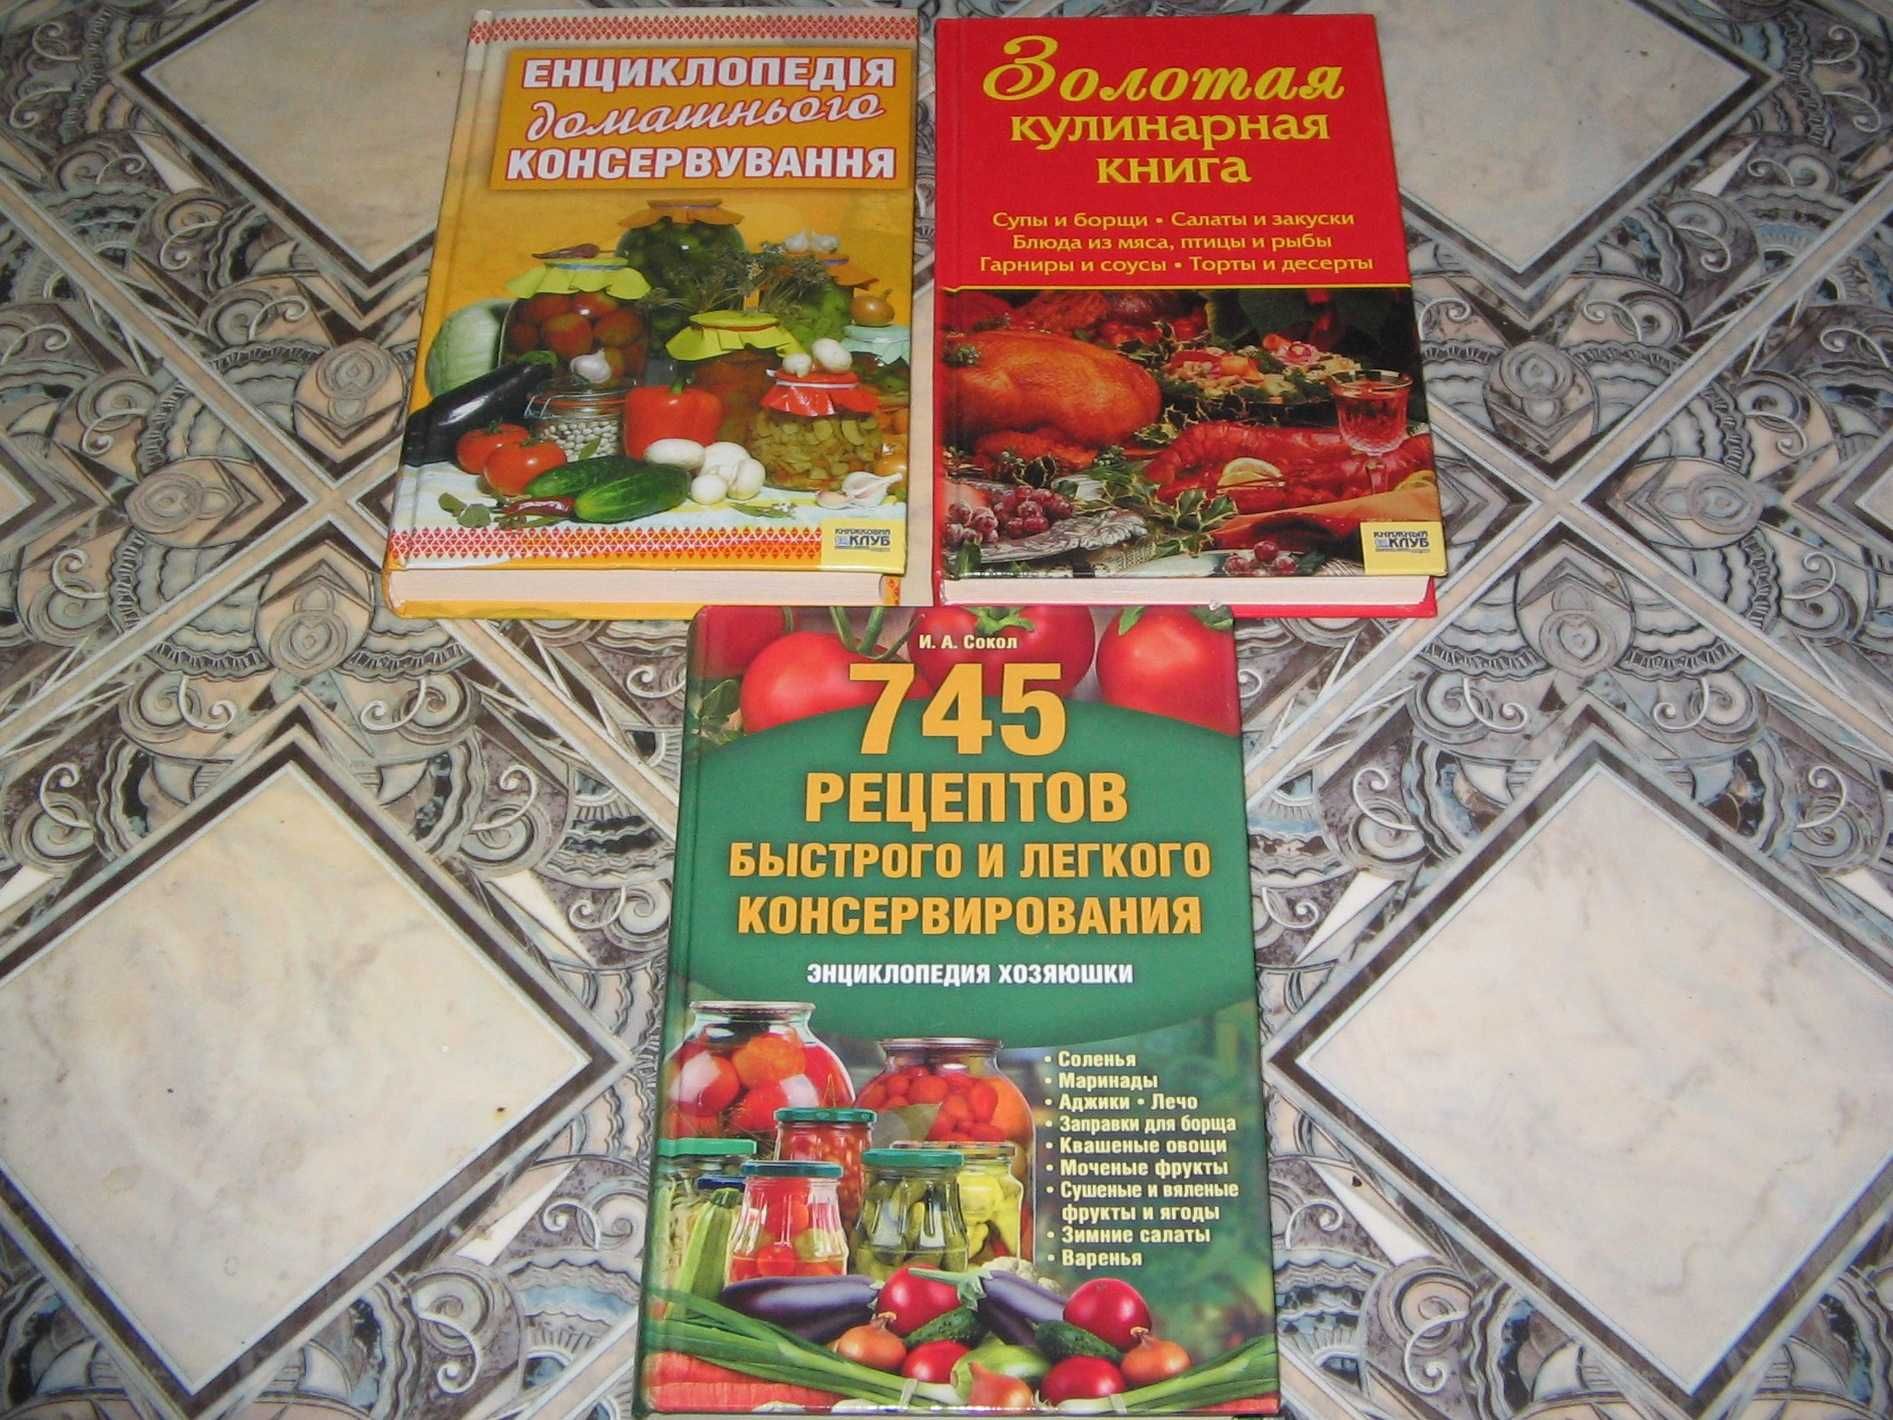 Консервирование и кулинария (три книги, цена за все)